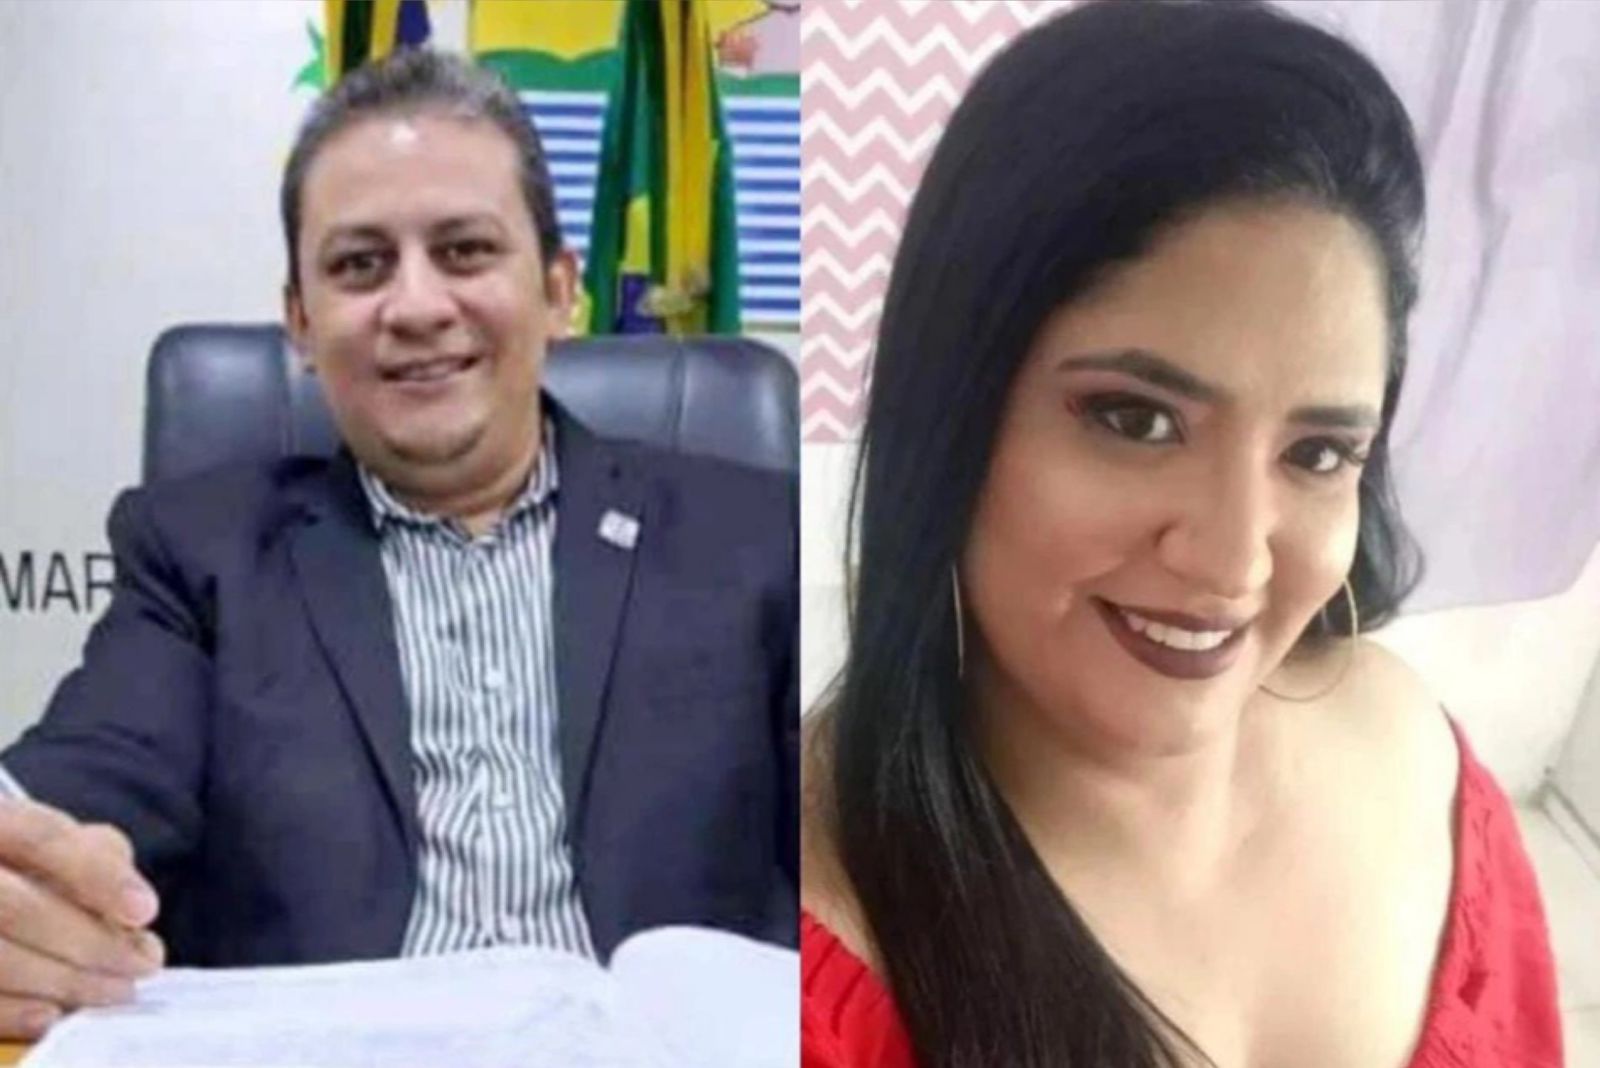 Vereador Netinho e esposa discutiram antes do acidente, diz delegado